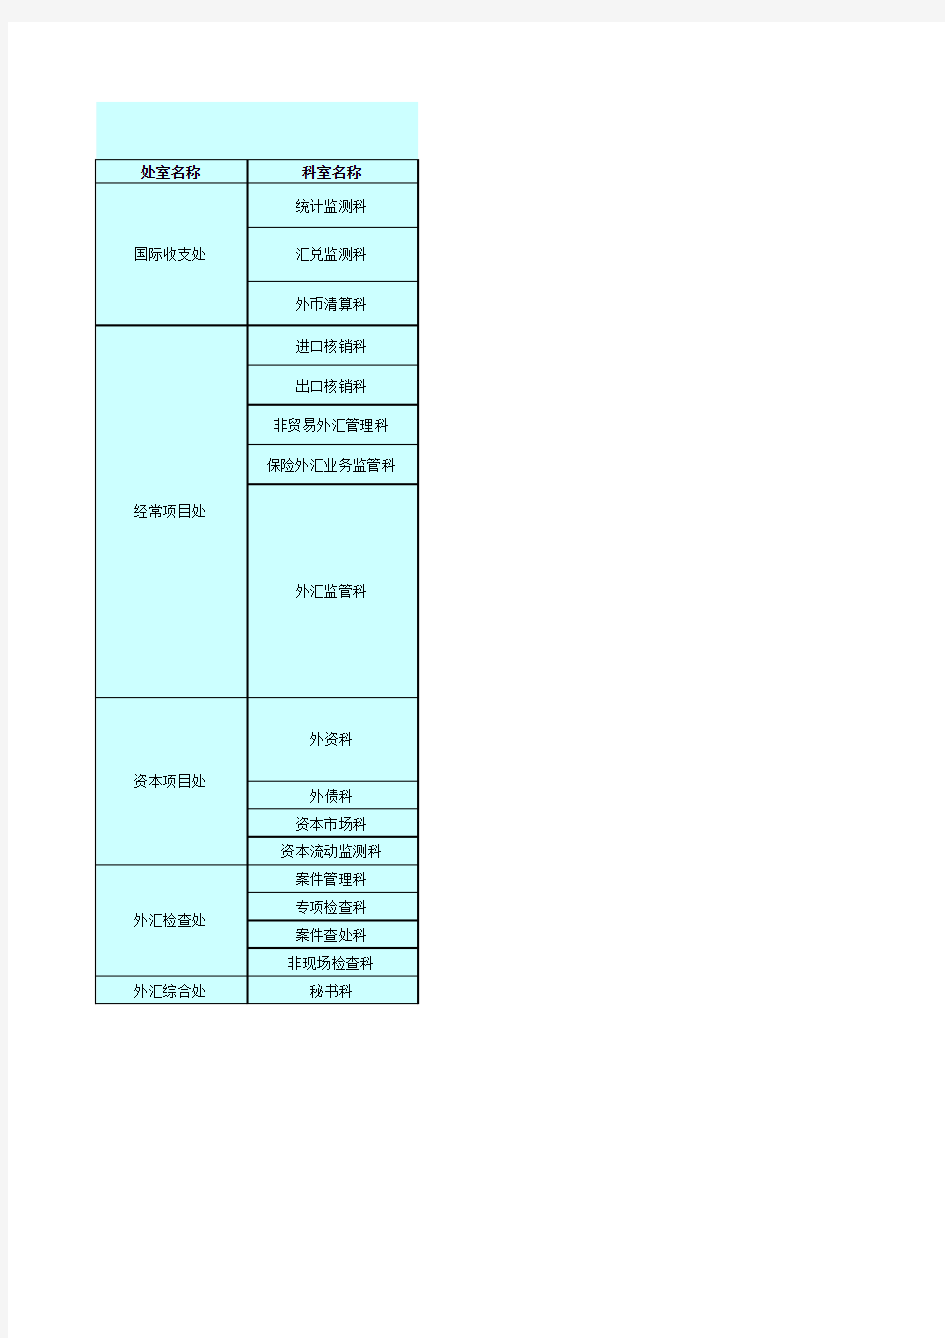 上海外管局进出口核销培训总结-进口核销-Appendix-5_国家外汇管理局上海市分局外汇业务咨询电话一览表